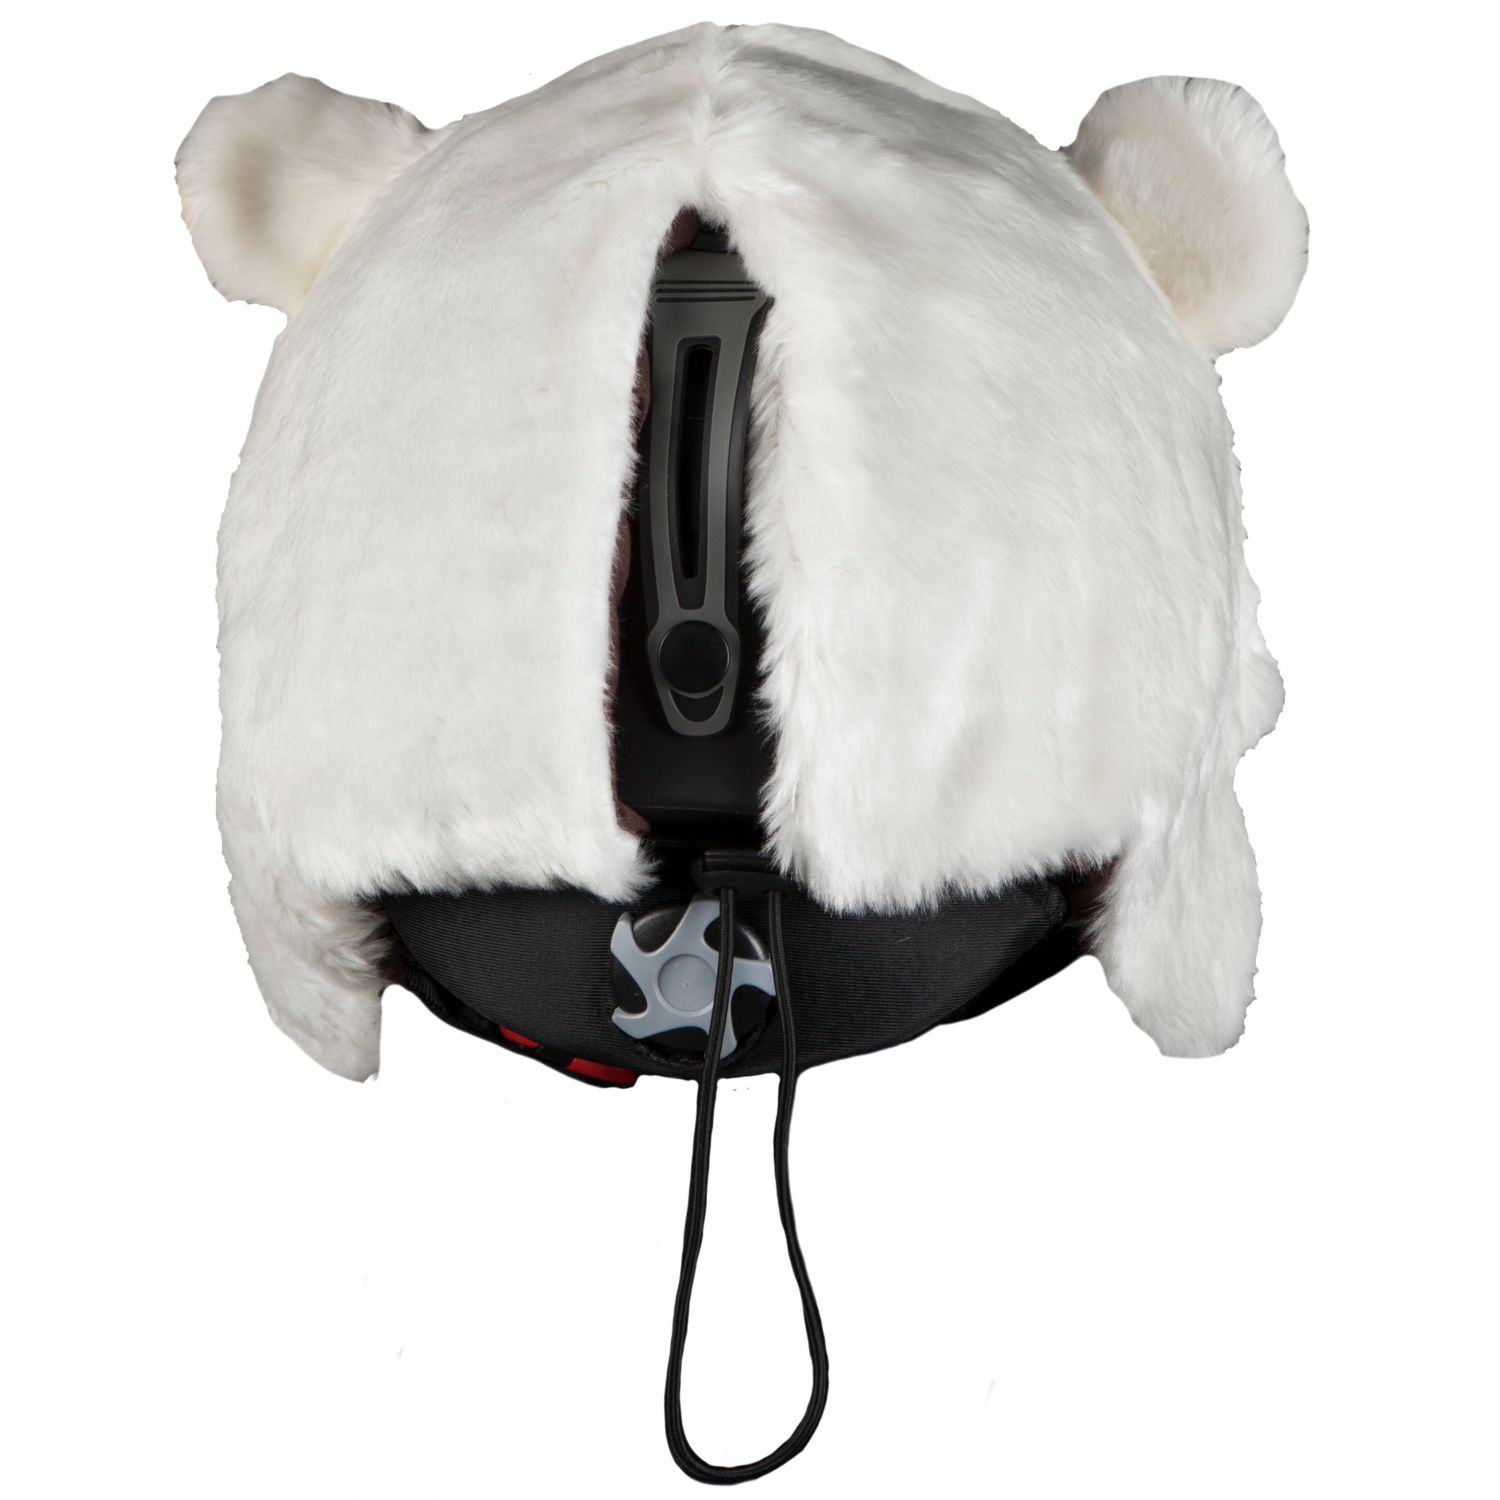 Hoxyheads hjelmcover, Isbjørn